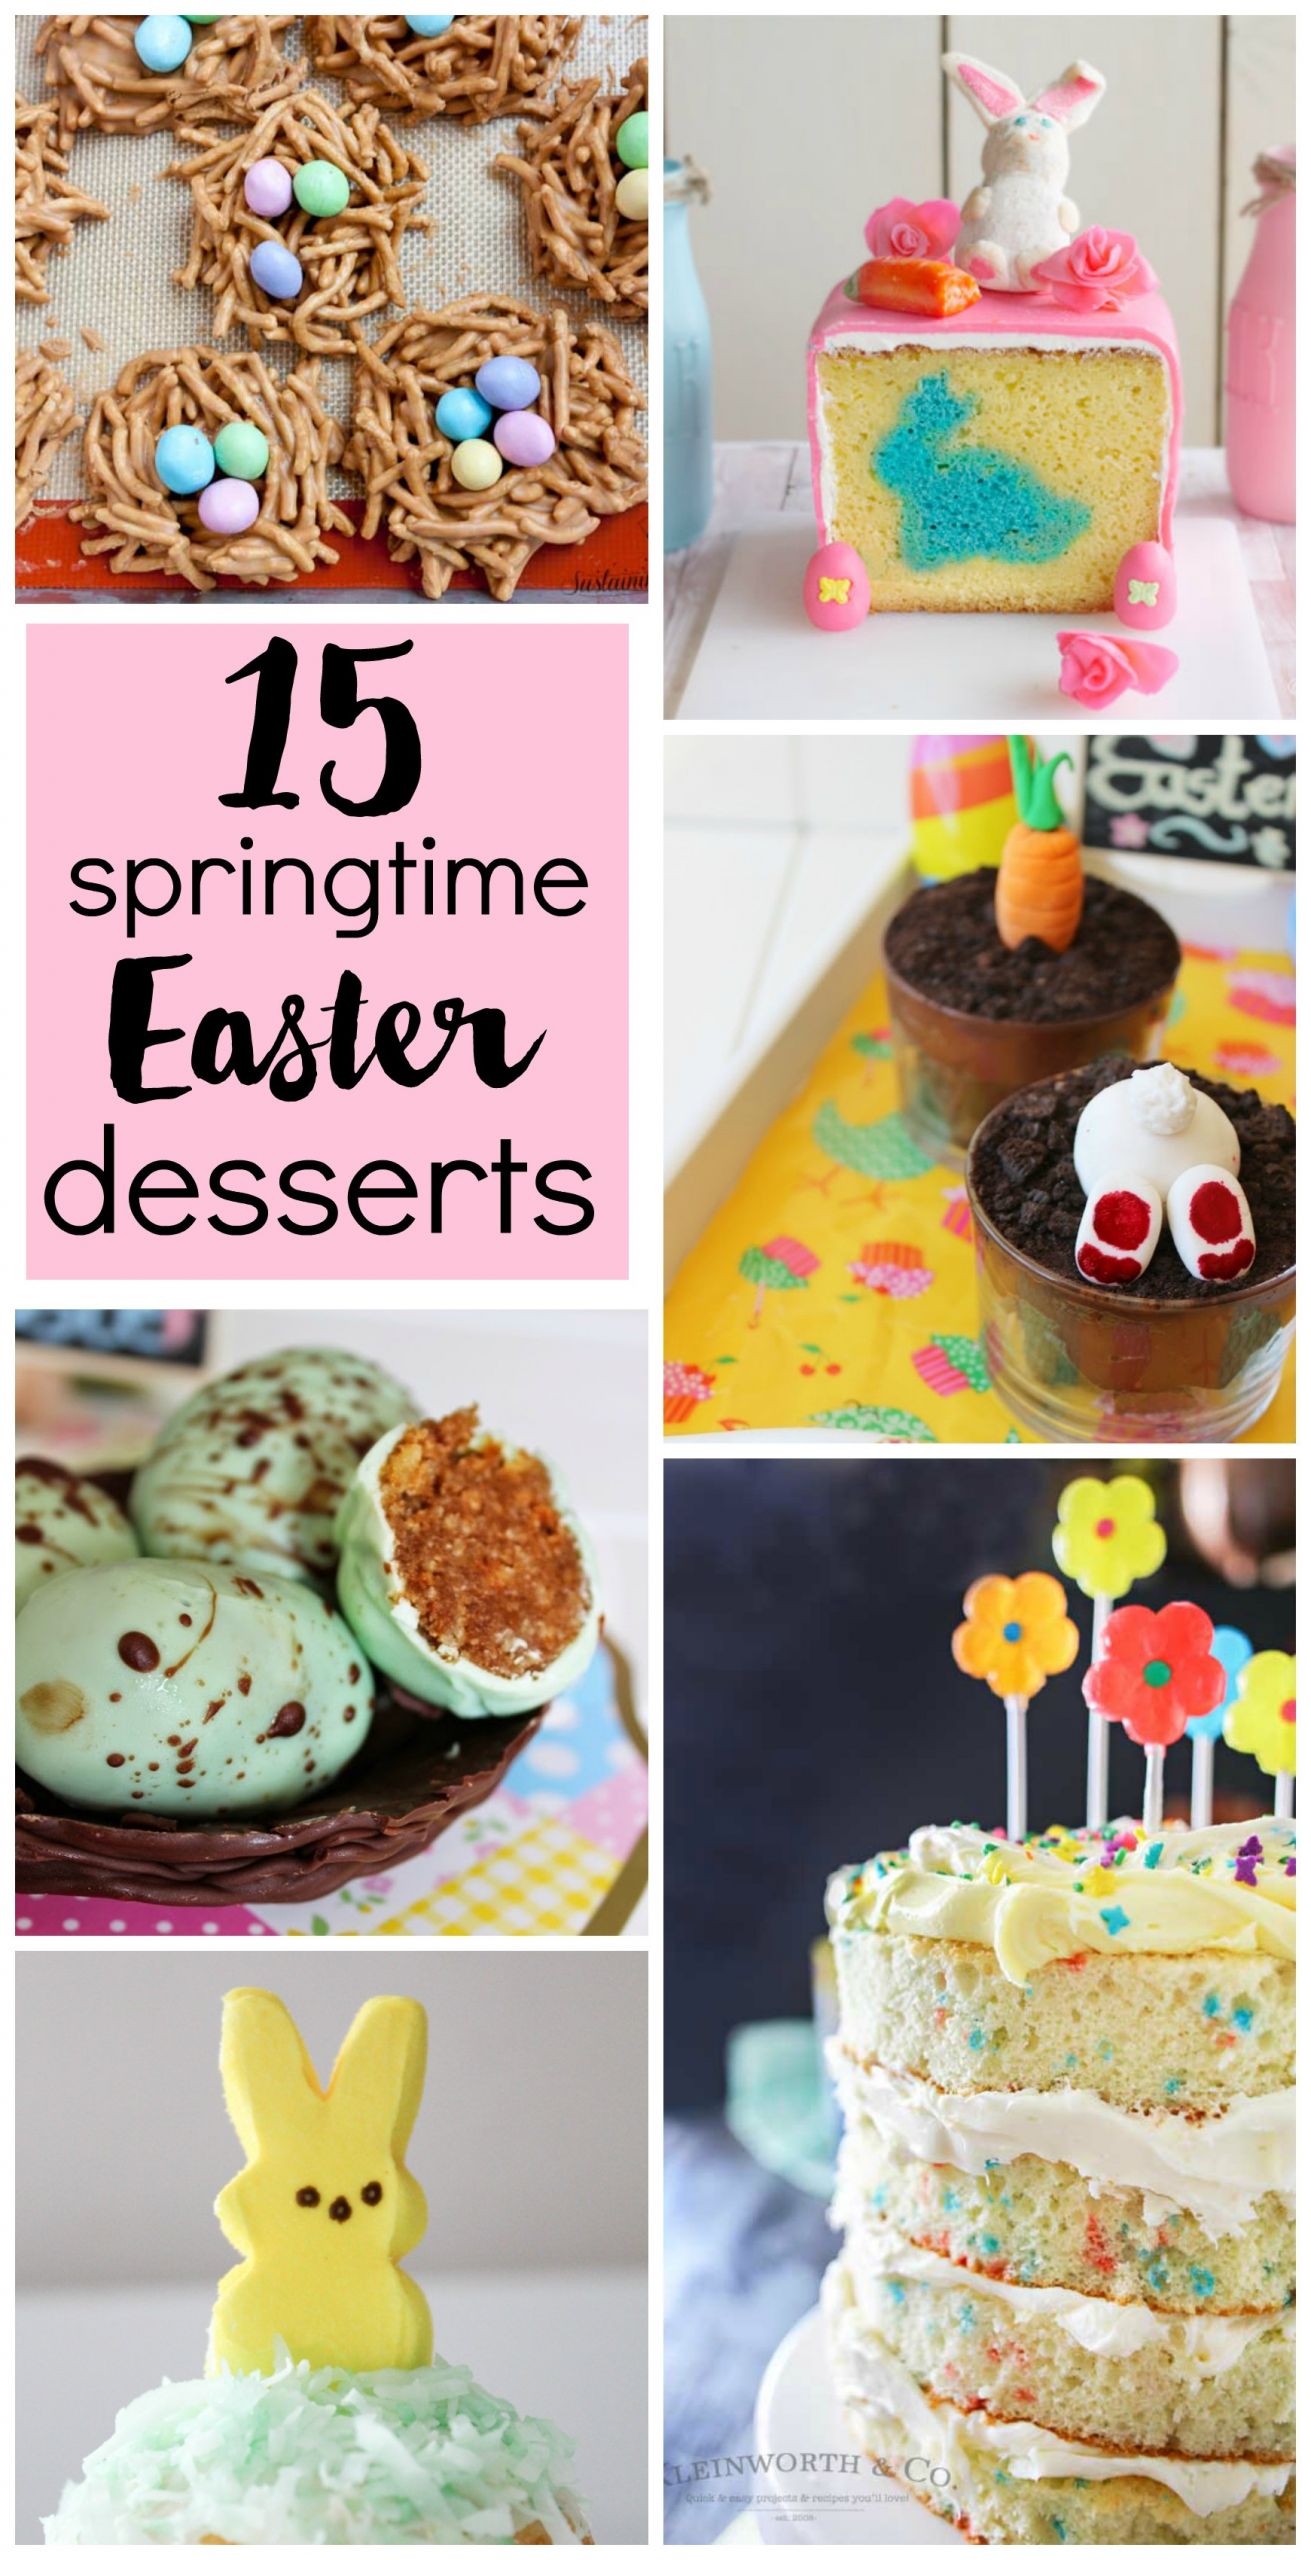 Martha Stewart Easter Desserts
 15 Springtime Easter Desserts